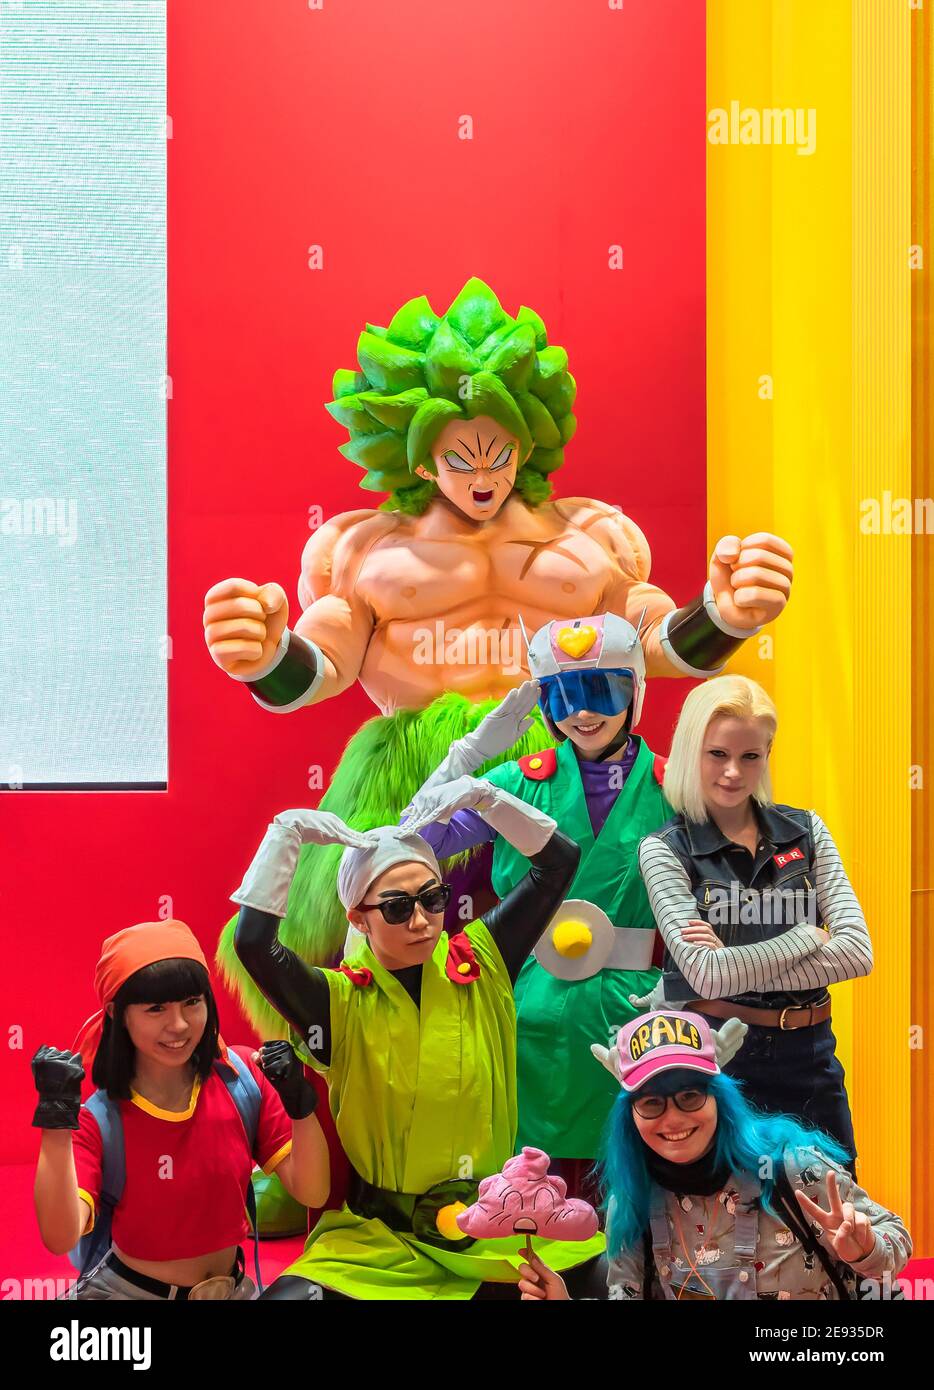 chiba, japon - décembre 22 2018 : groupe de jeunes cosplayers portant des costumes et des perruques des personnages de la série japonaise de mangas et d'anime de Drago Banque D'Images